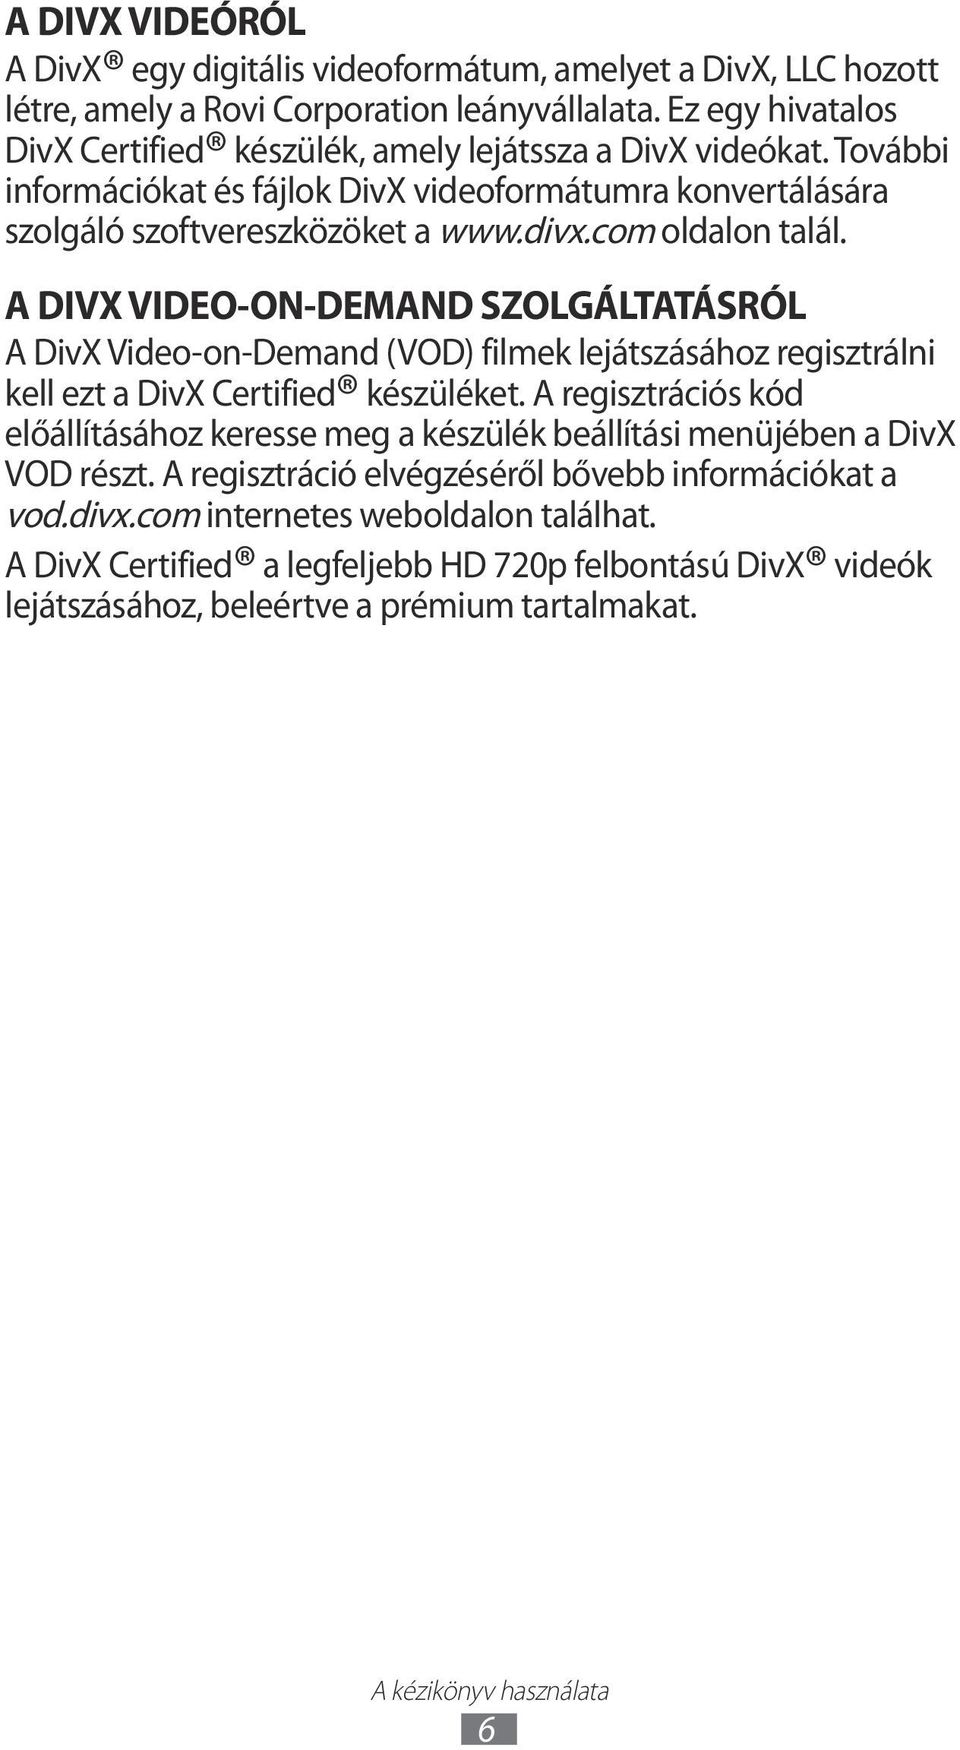 com oldalon talál. A DIVX VIDEO-ON-DEMAND SZOLGÁLTATÁSRÓL A DivX Video-on-Demand (VOD) filmek lejátszásához regisztrálni kell ezt a DivX Certified készüléket.